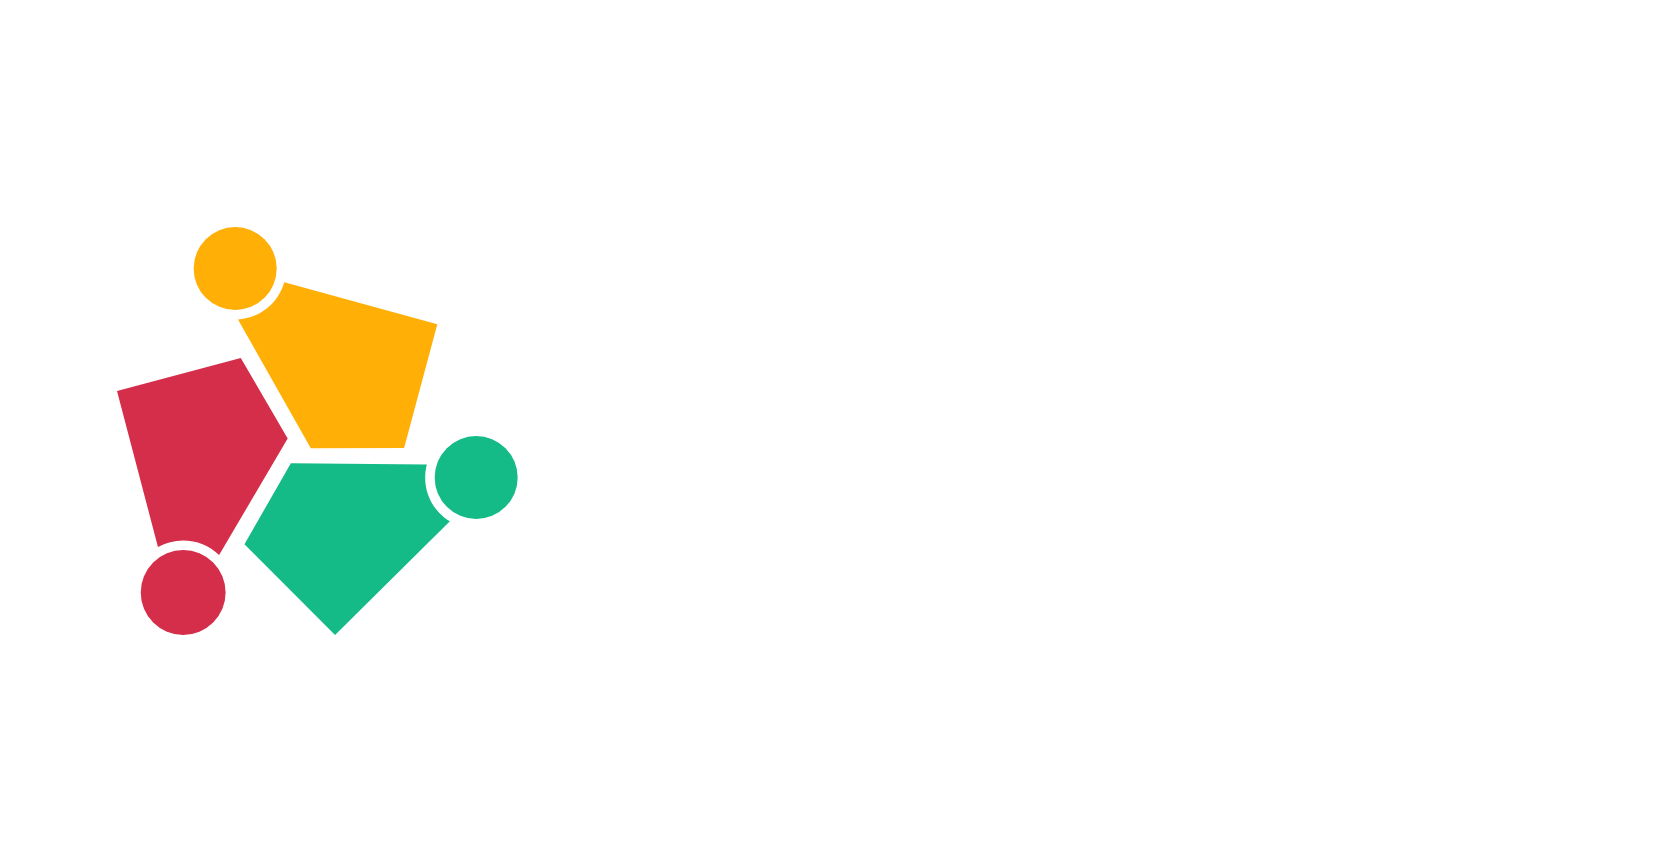 Sarkari Result Info - Sarkari Results | LinkedIn